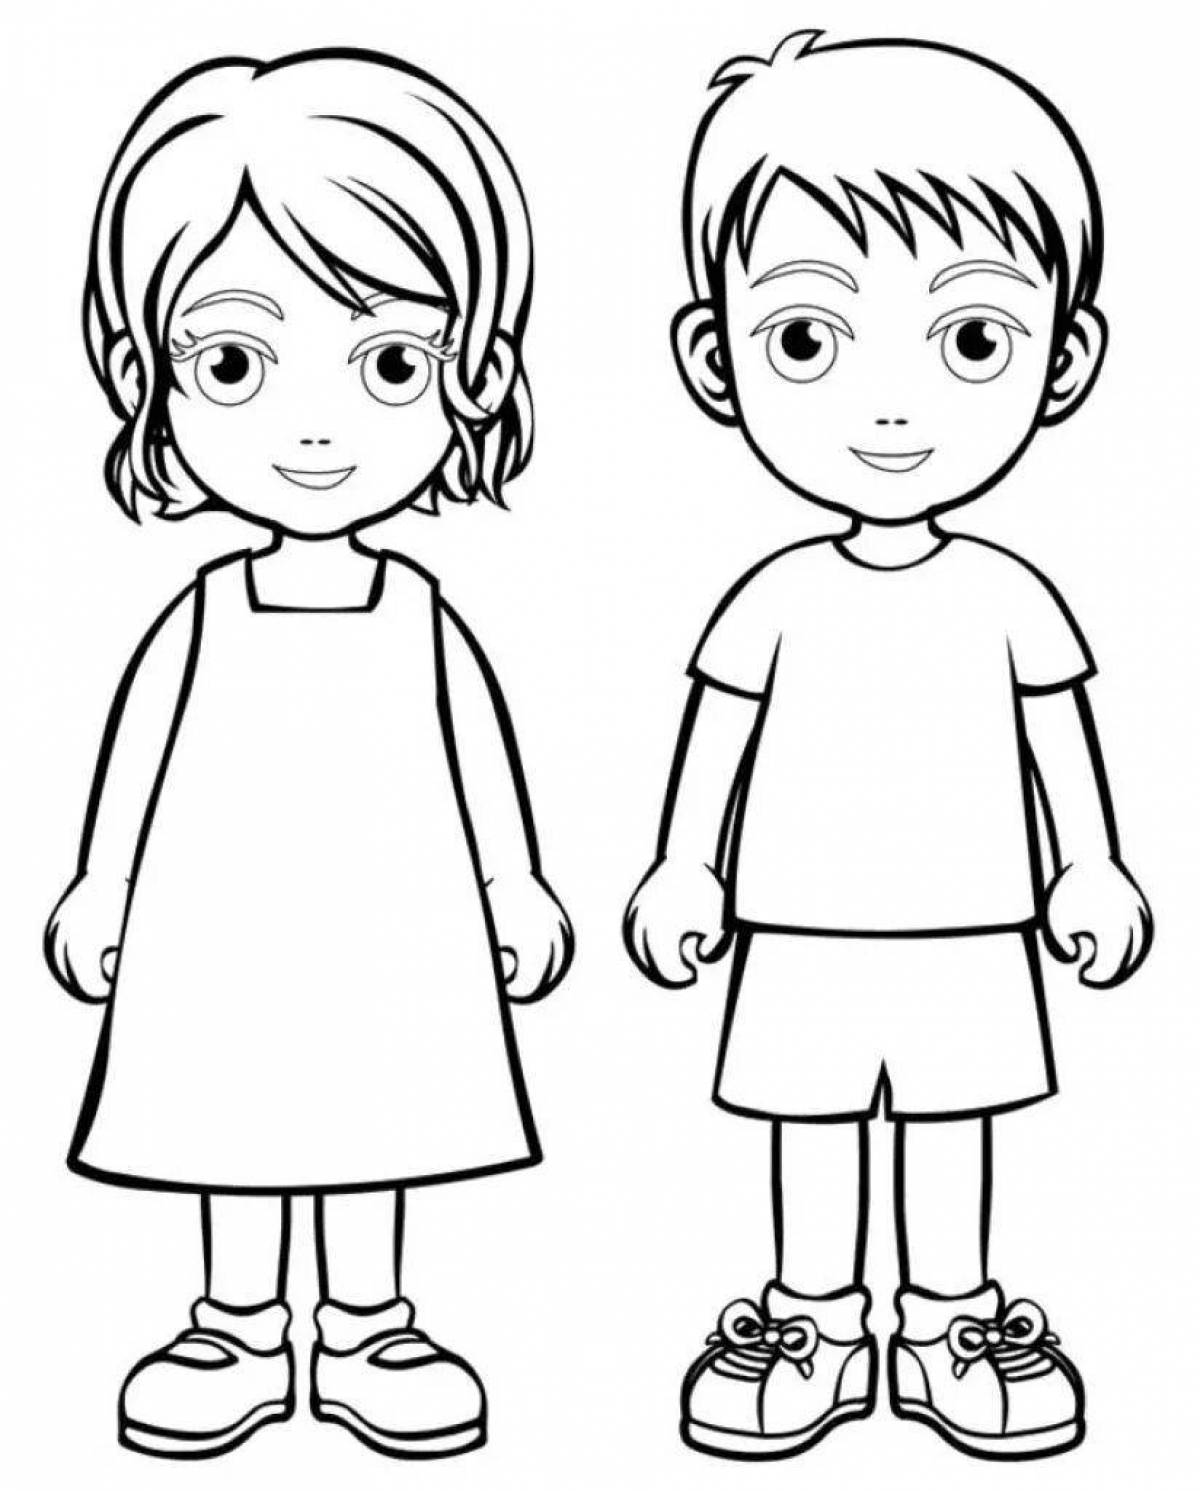 Радостная раскраска рисунок девочки и мальчика